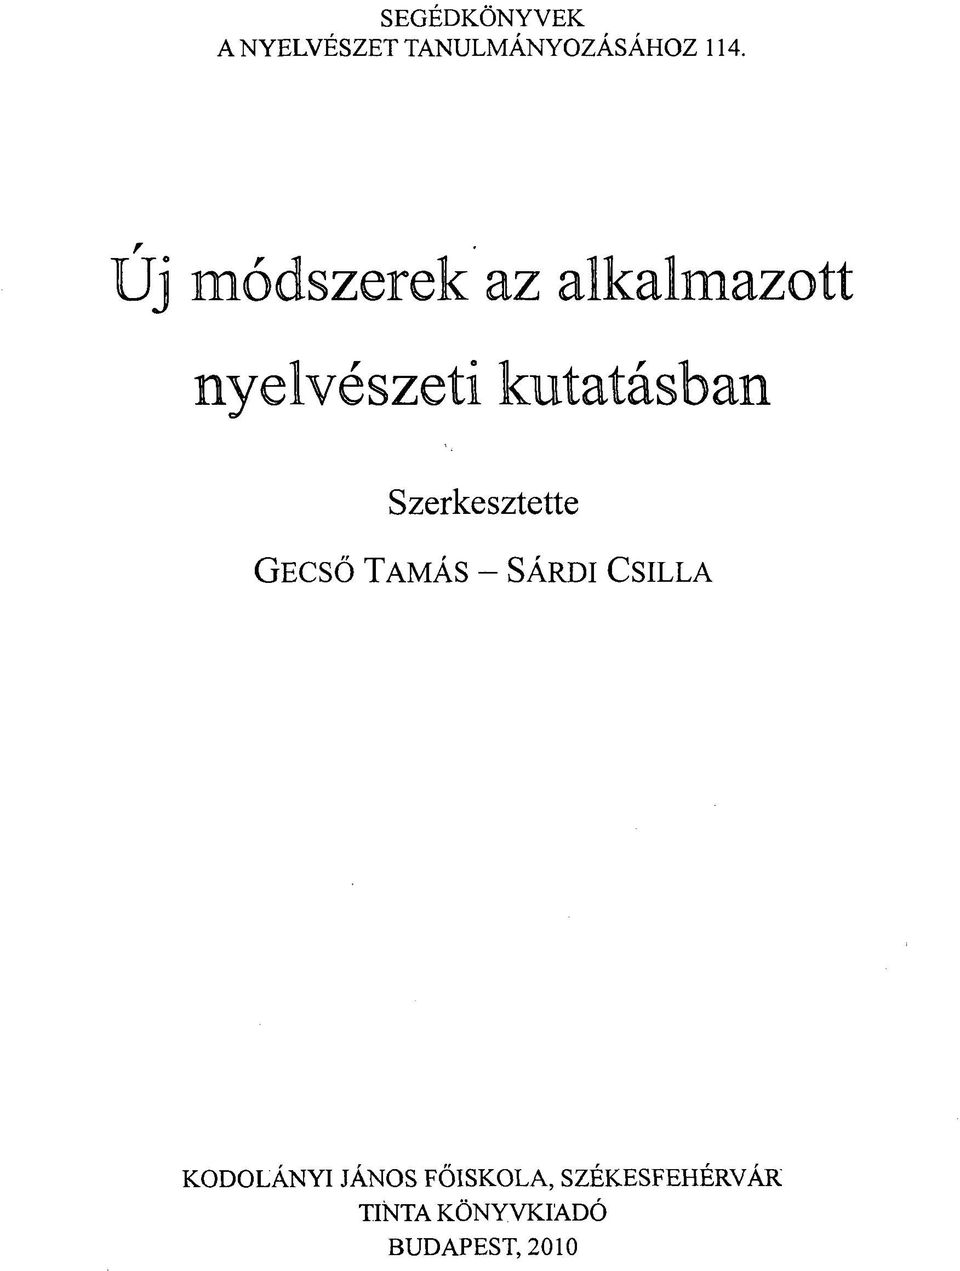 Szerkesztette GECSŐ TAMÁS - SÁRDI CSILLA KODOLÁNYI